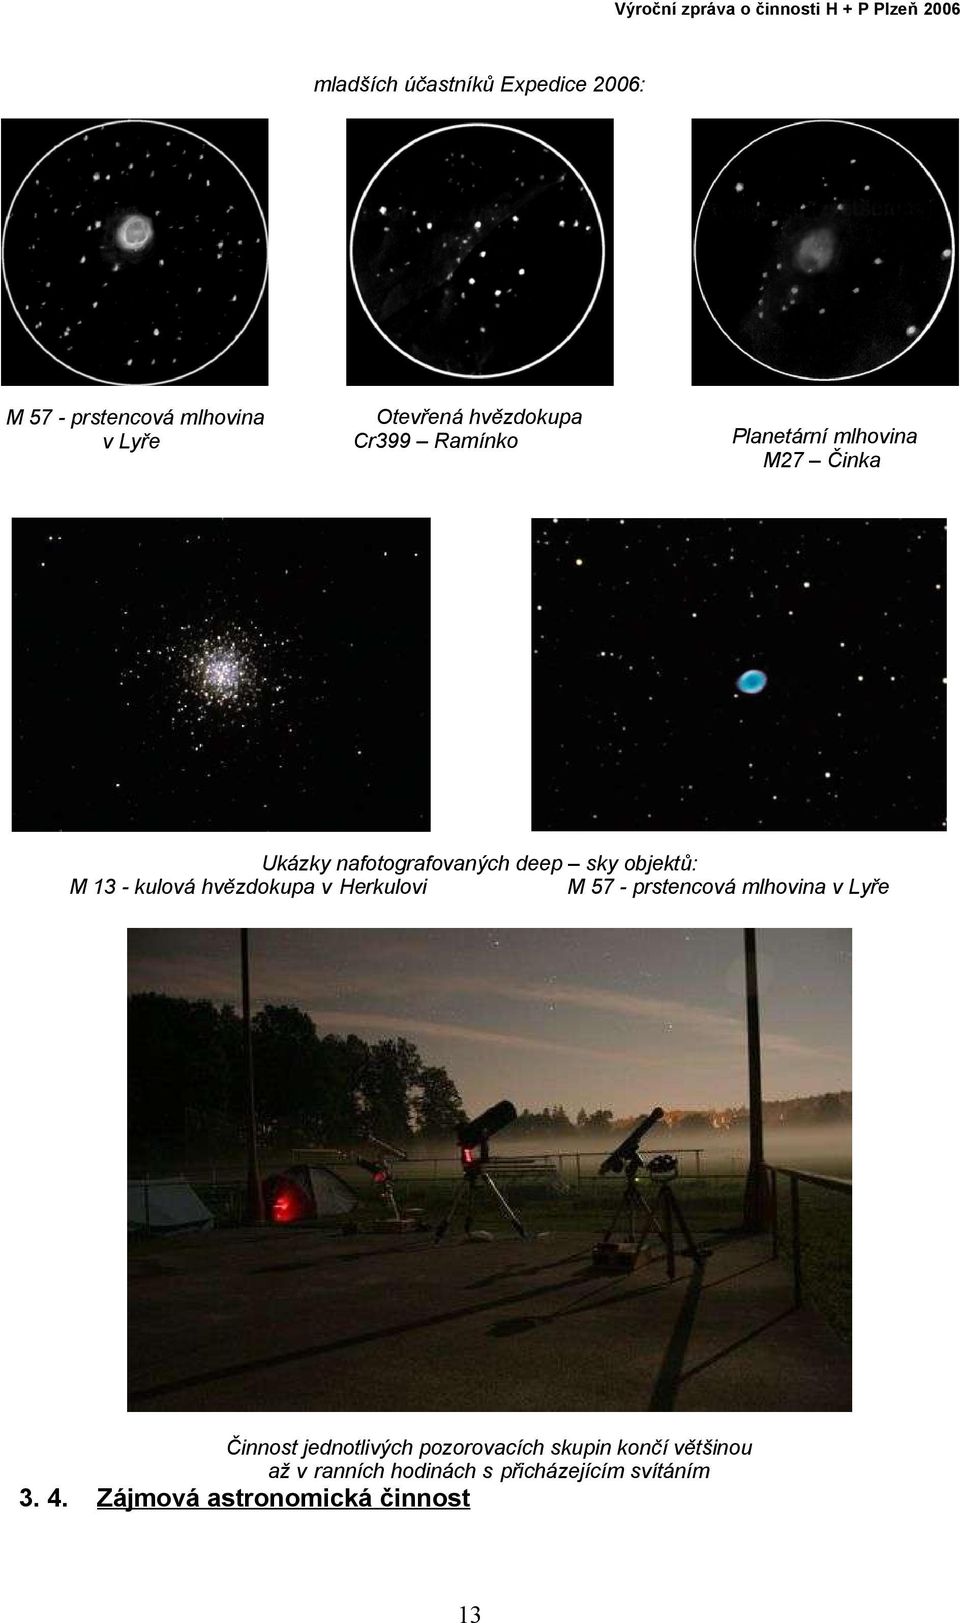 hvězdokupa v Herkulovi M 57 prstencová mlhovina v Lyře Činnost jednotlivých pozorovacích